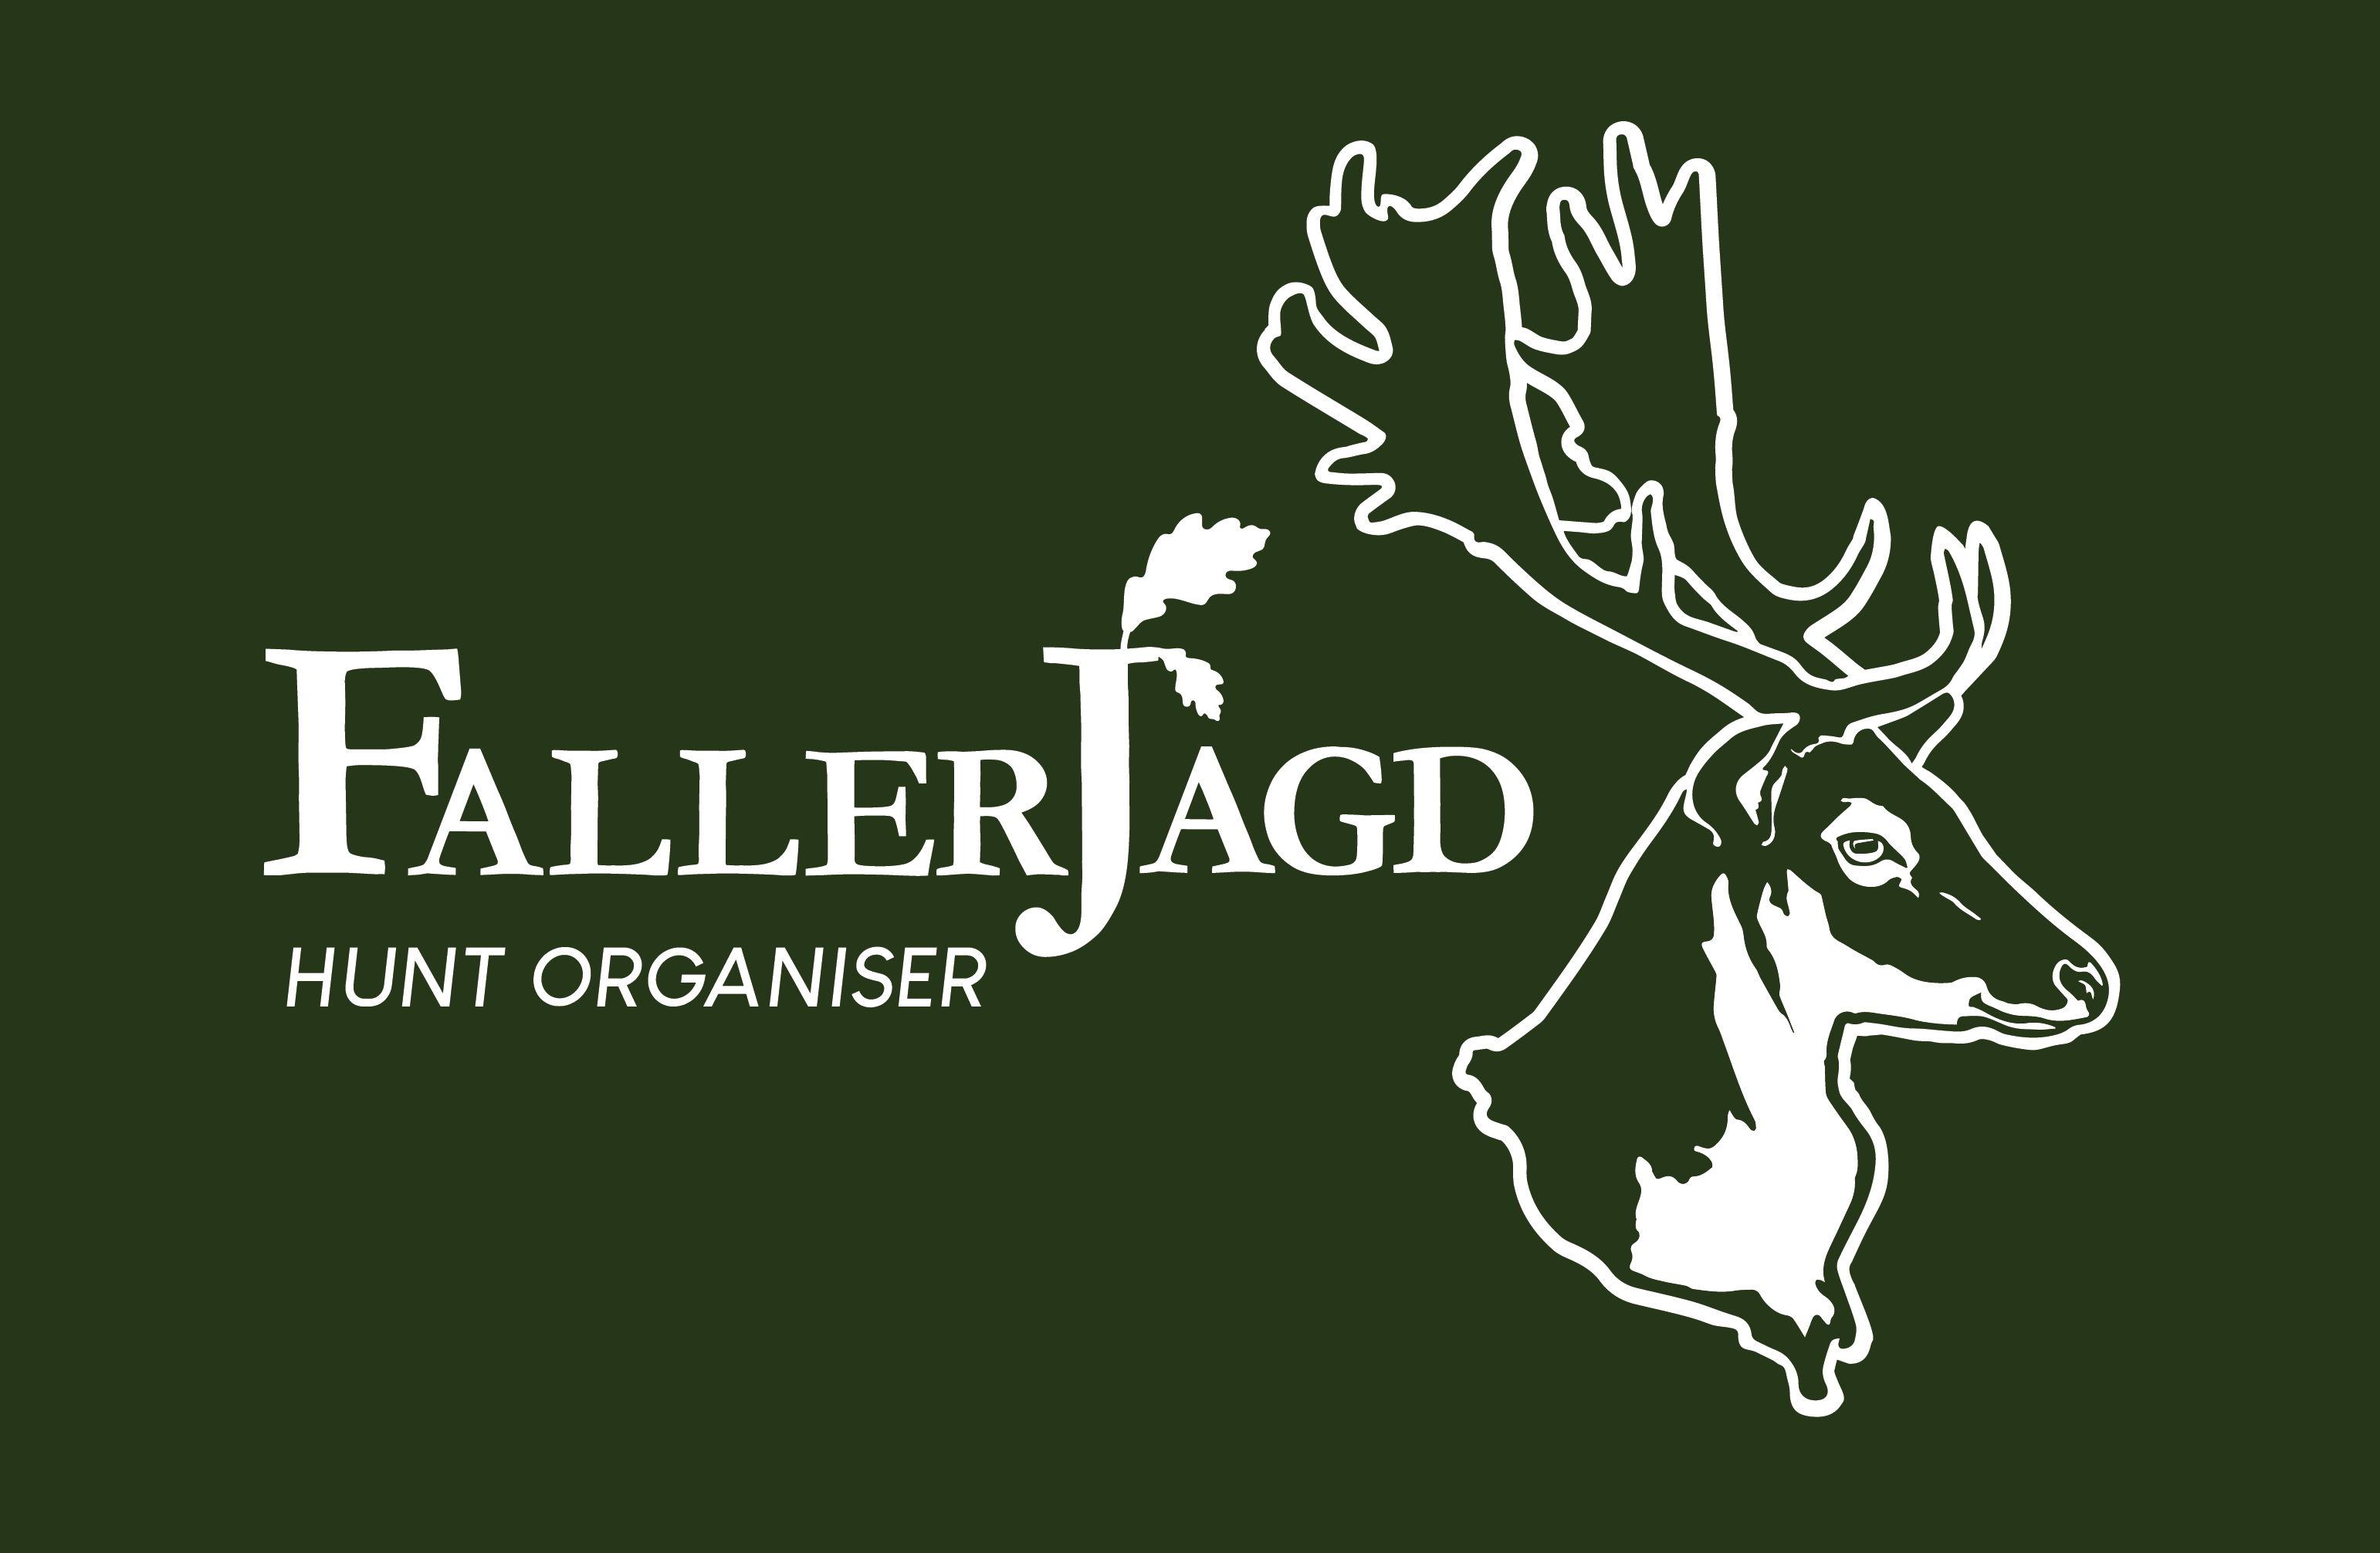 Faller Jagd Hungary - Vadászatok szervezése